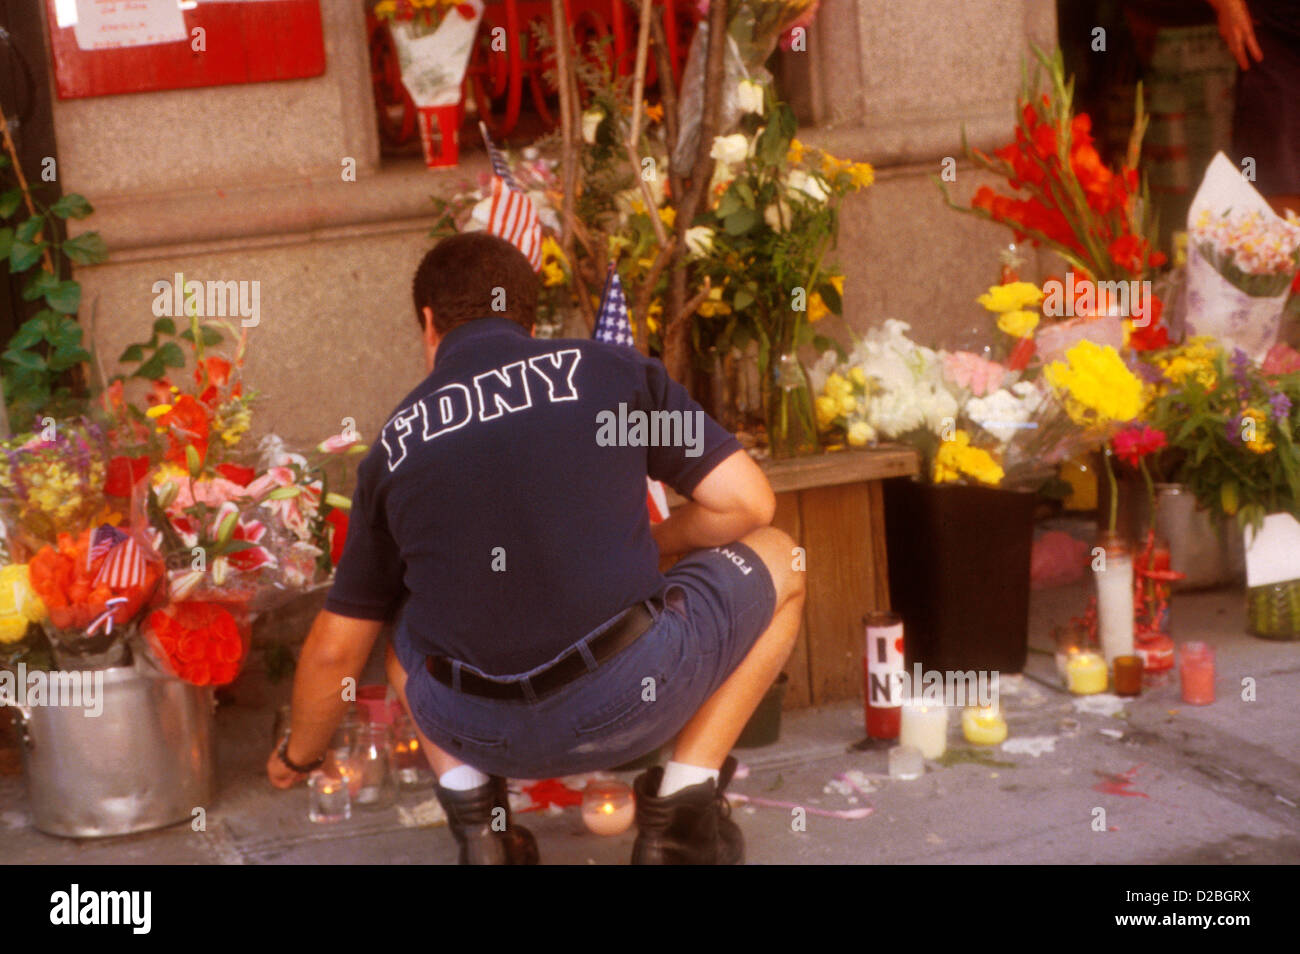 La ville de New York, le 11 septembre 2001. Monuments commémoratifs de pompier à la Caserne # 14 à la suite de l'attaque du World Trade Center Banque D'Images